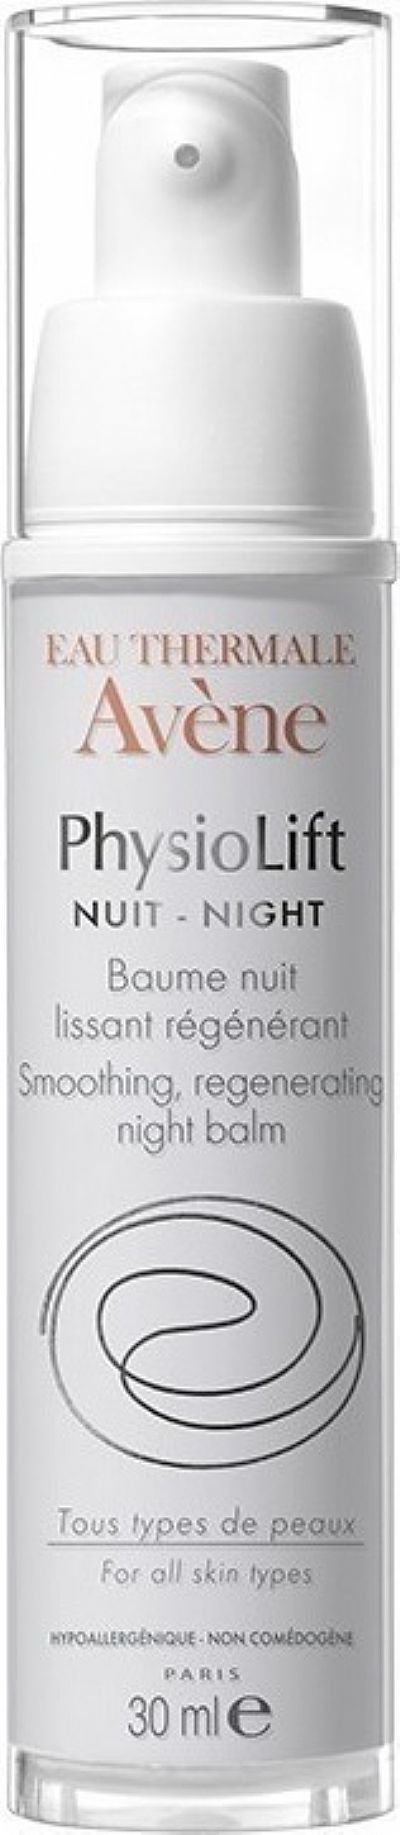 Avene  Physiolift λειαντική,αναγεννητική κρέμα νύχτας, 30 ml